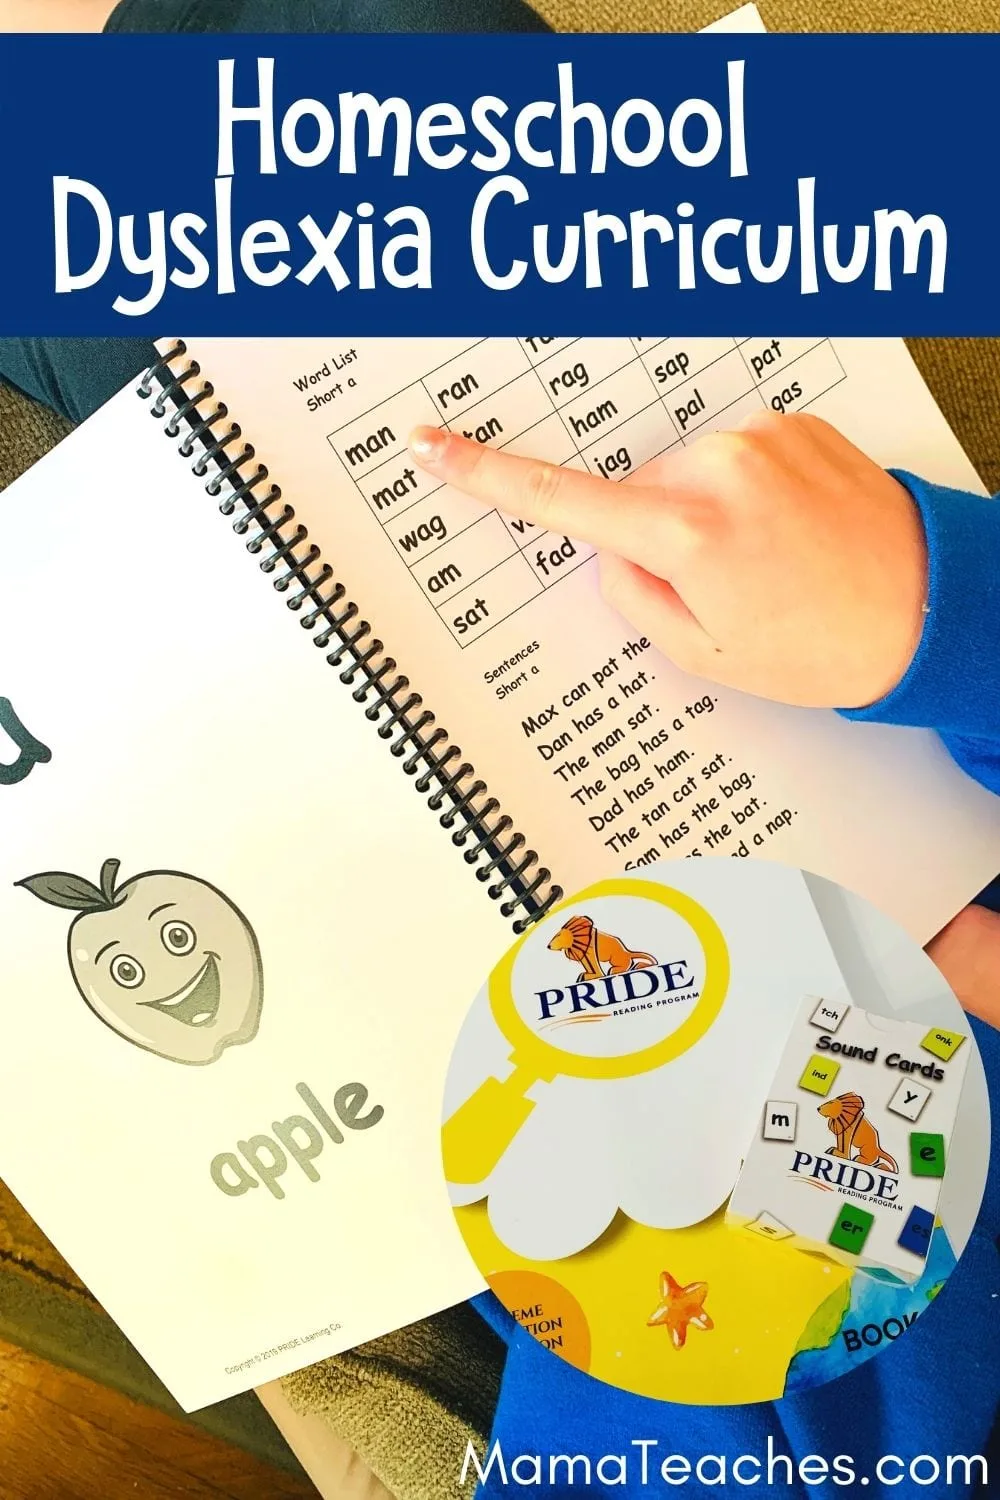 Homeschool Dyslexia Curriculum for Kids